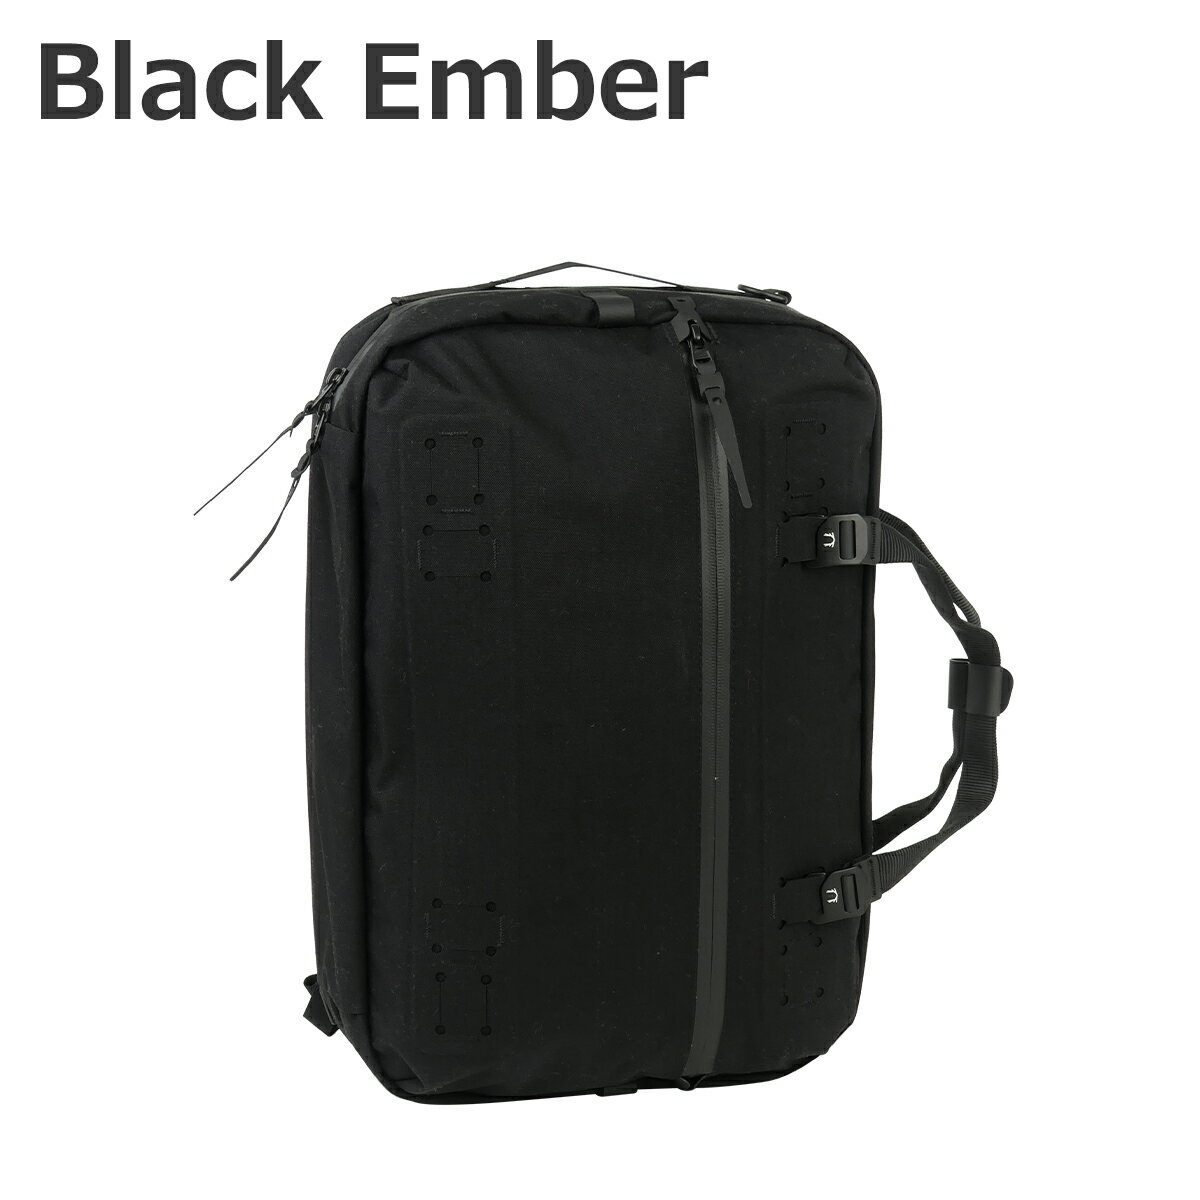 BLACK EMBER ブラックエンバー FORGE-20 60001 18L フォージ バックパック ショルダーバッグ ブリーフケース 3WAY リュック ビジネス バッグ 防水 PC収納